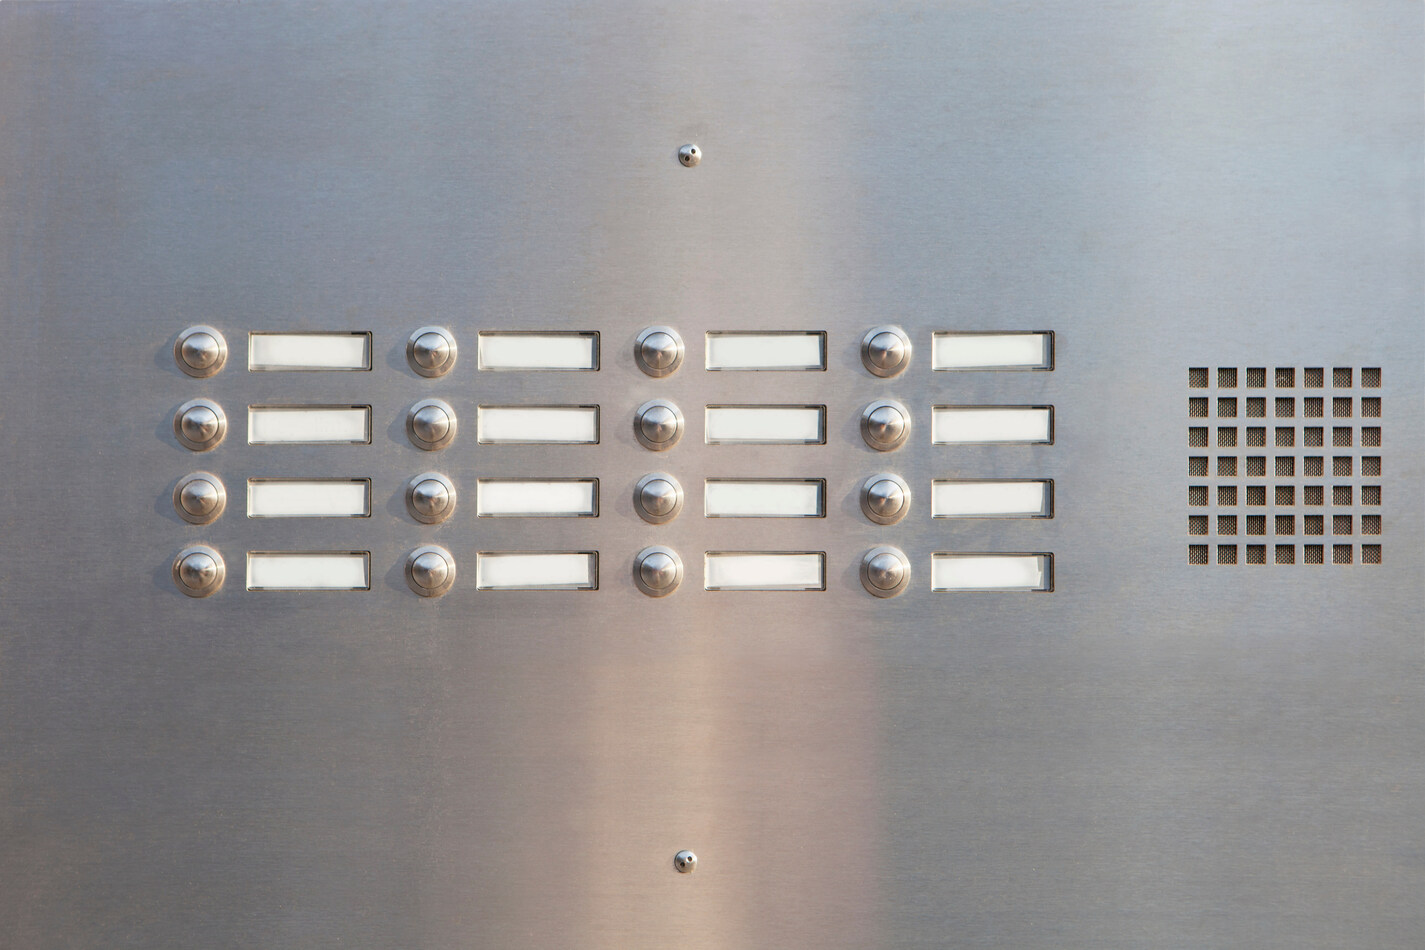 Panel de intercomunicación de acero inoxidable con botones y etiquetas en blanco.